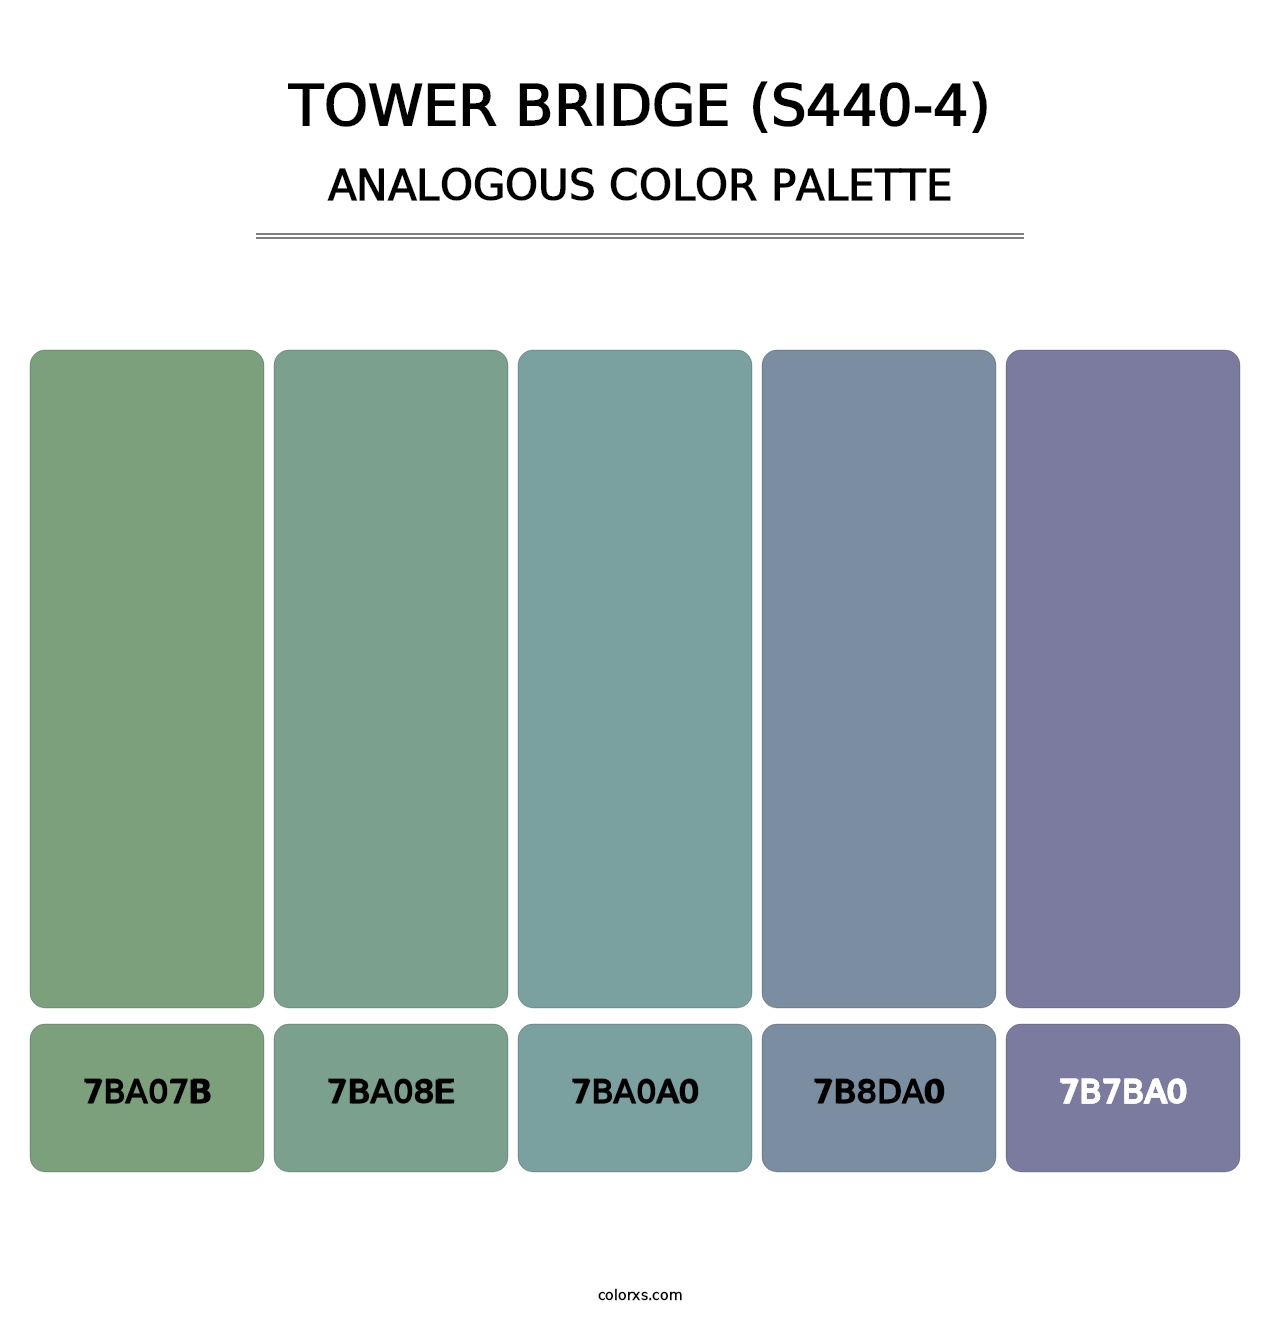 Tower Bridge (S440-4) - Analogous Color Palette